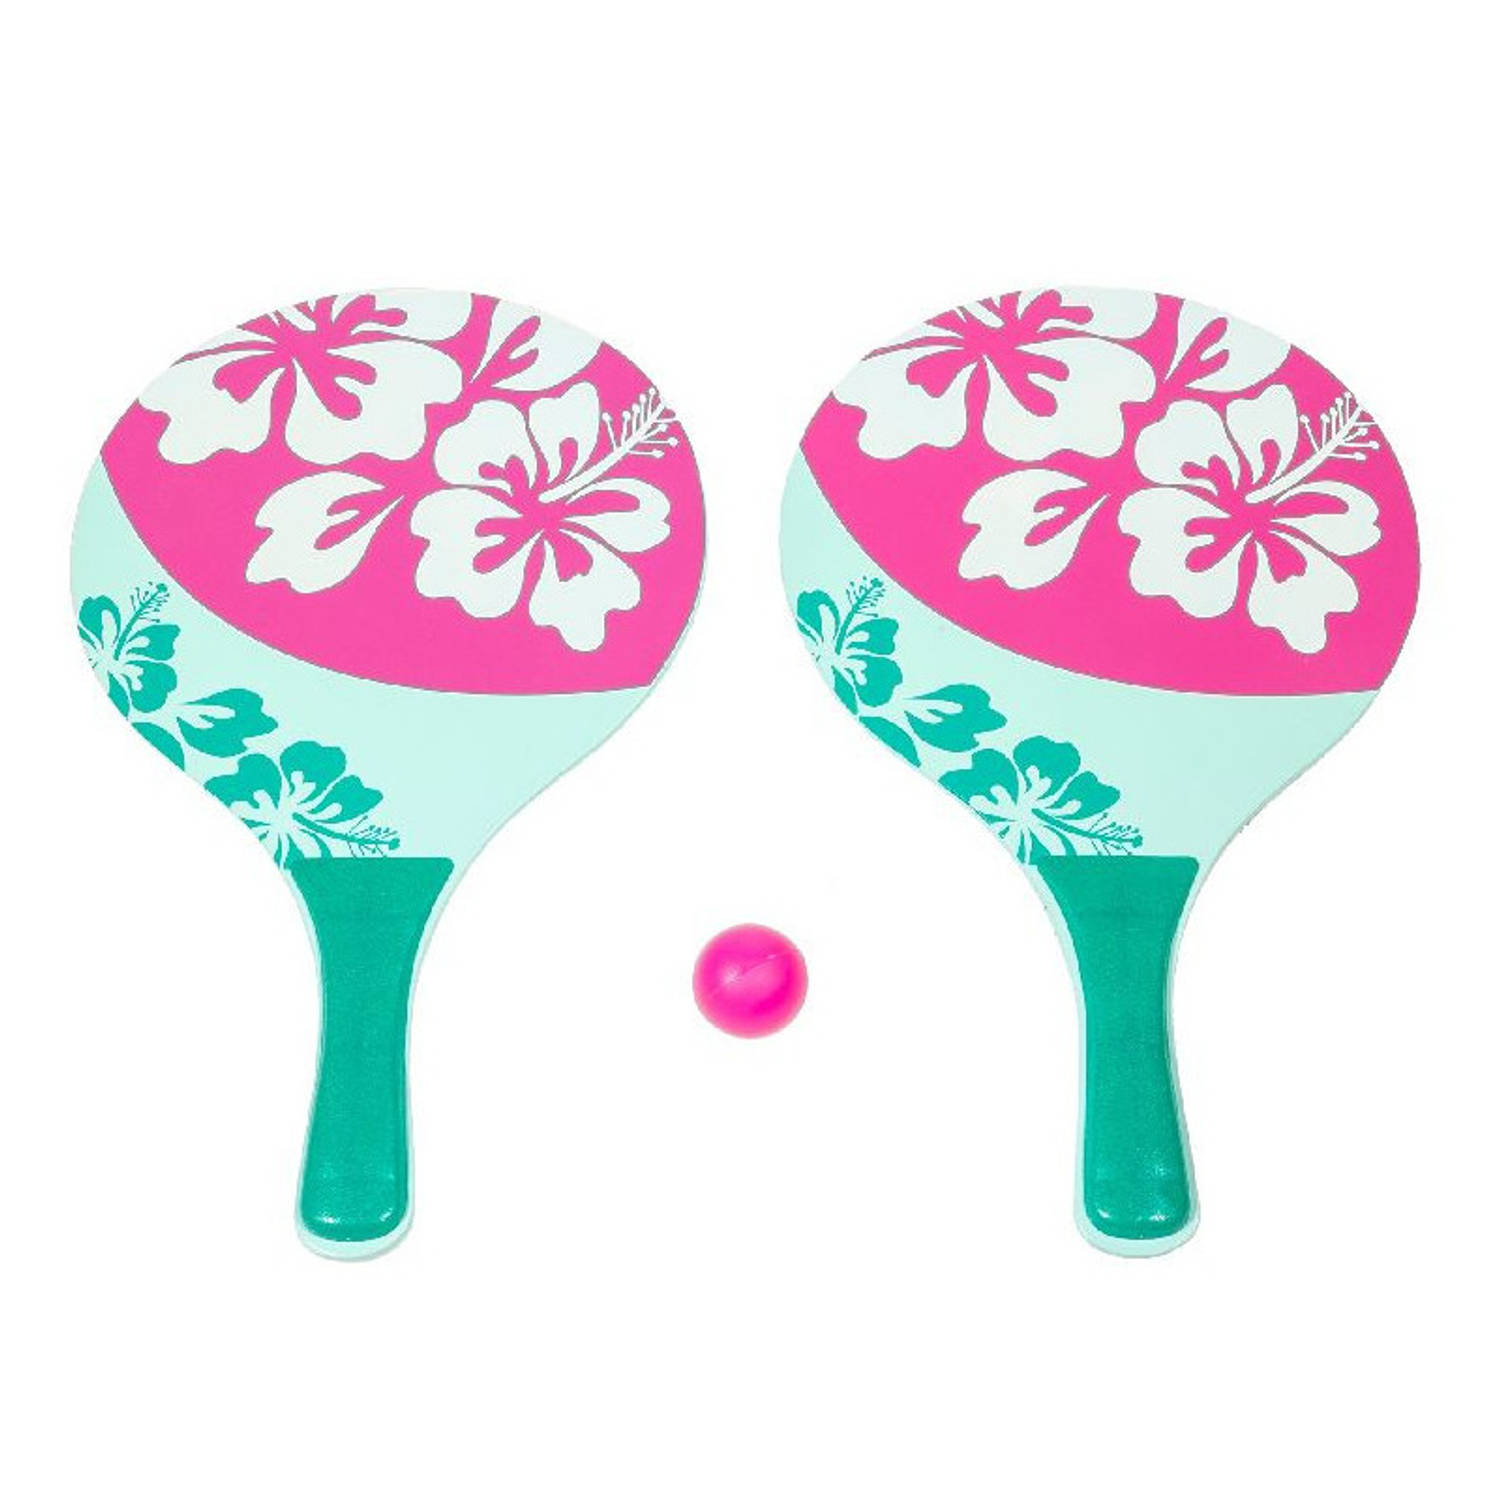 Houten beachball set groen/roze met bloemen print - Beachballsets